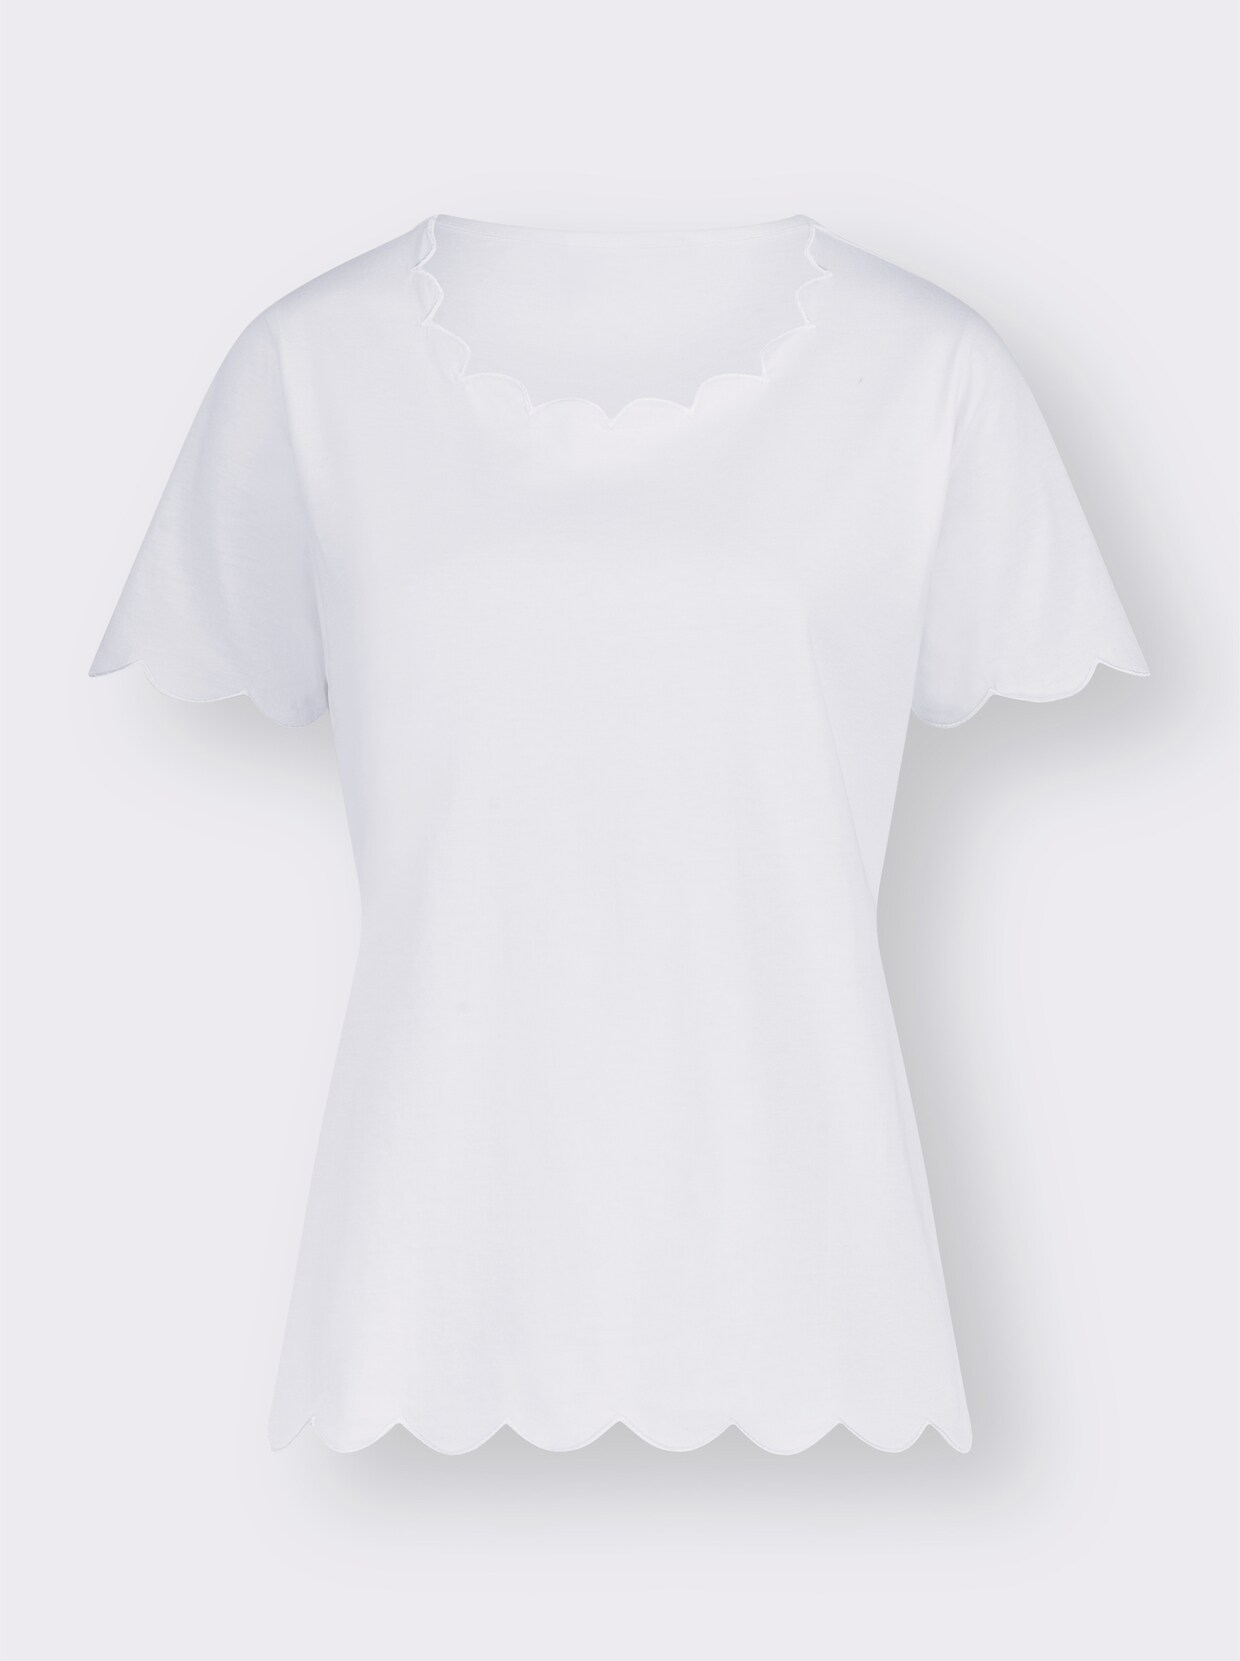 Tričko s krátkým rukávem - bílá